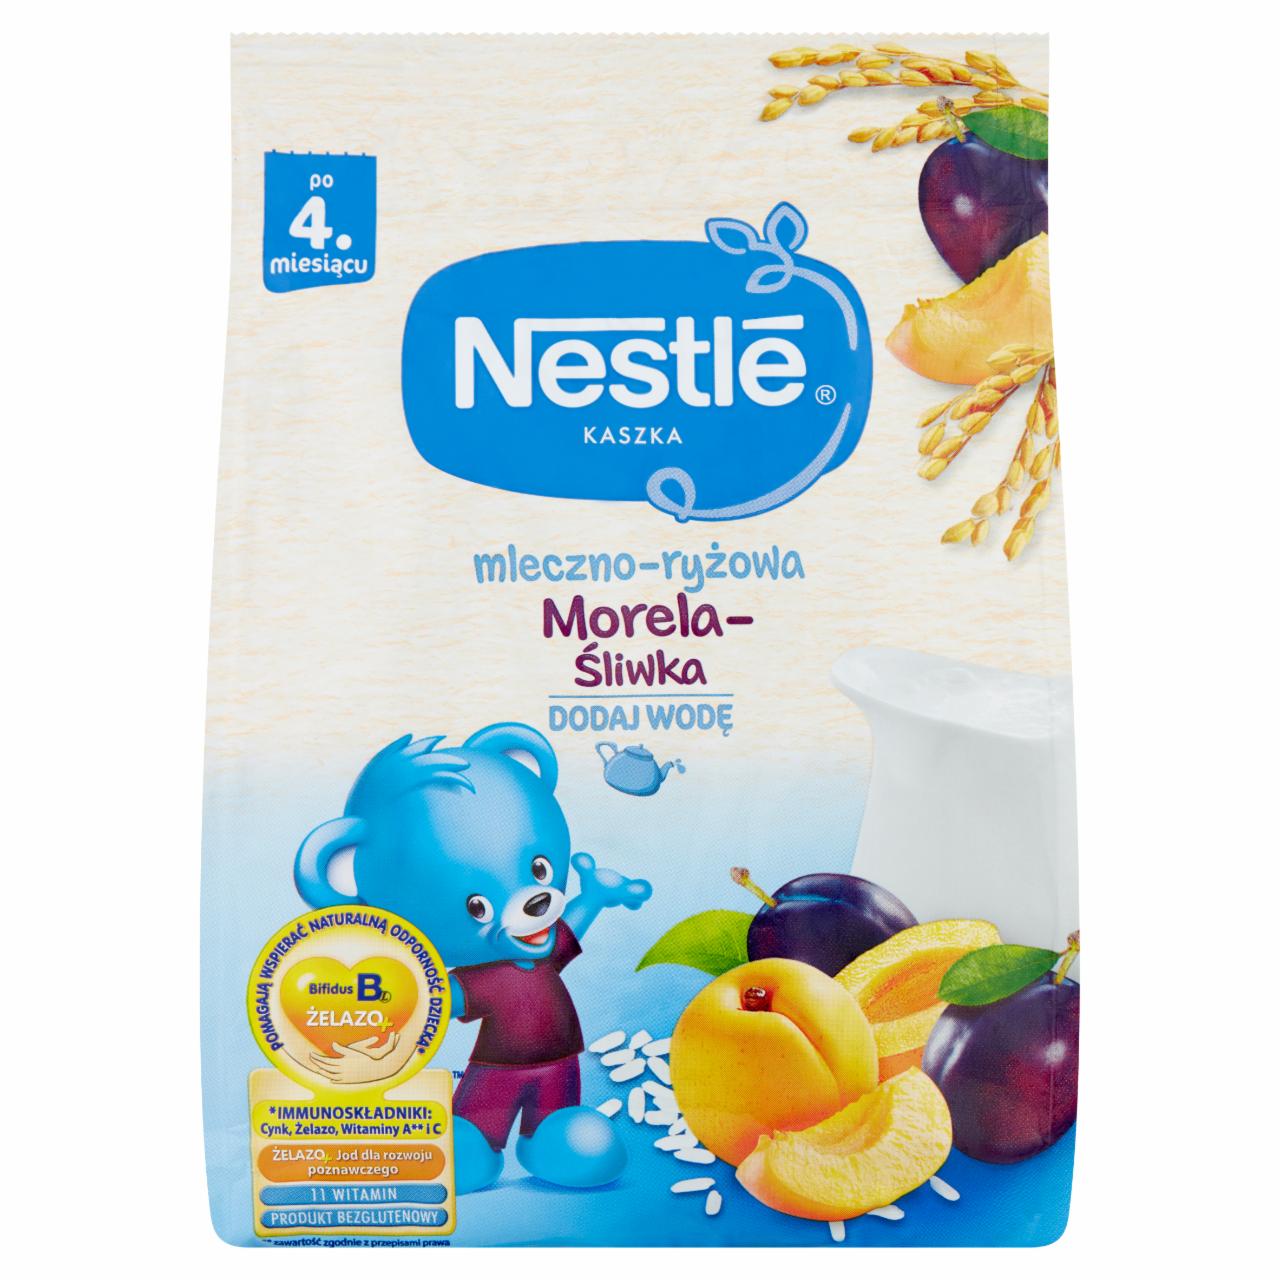 Zdjęcia - Nestlé Kaszka mleczno-ryżowa morela-śliwka dla niemowląt po 4. miesiącu 230 g